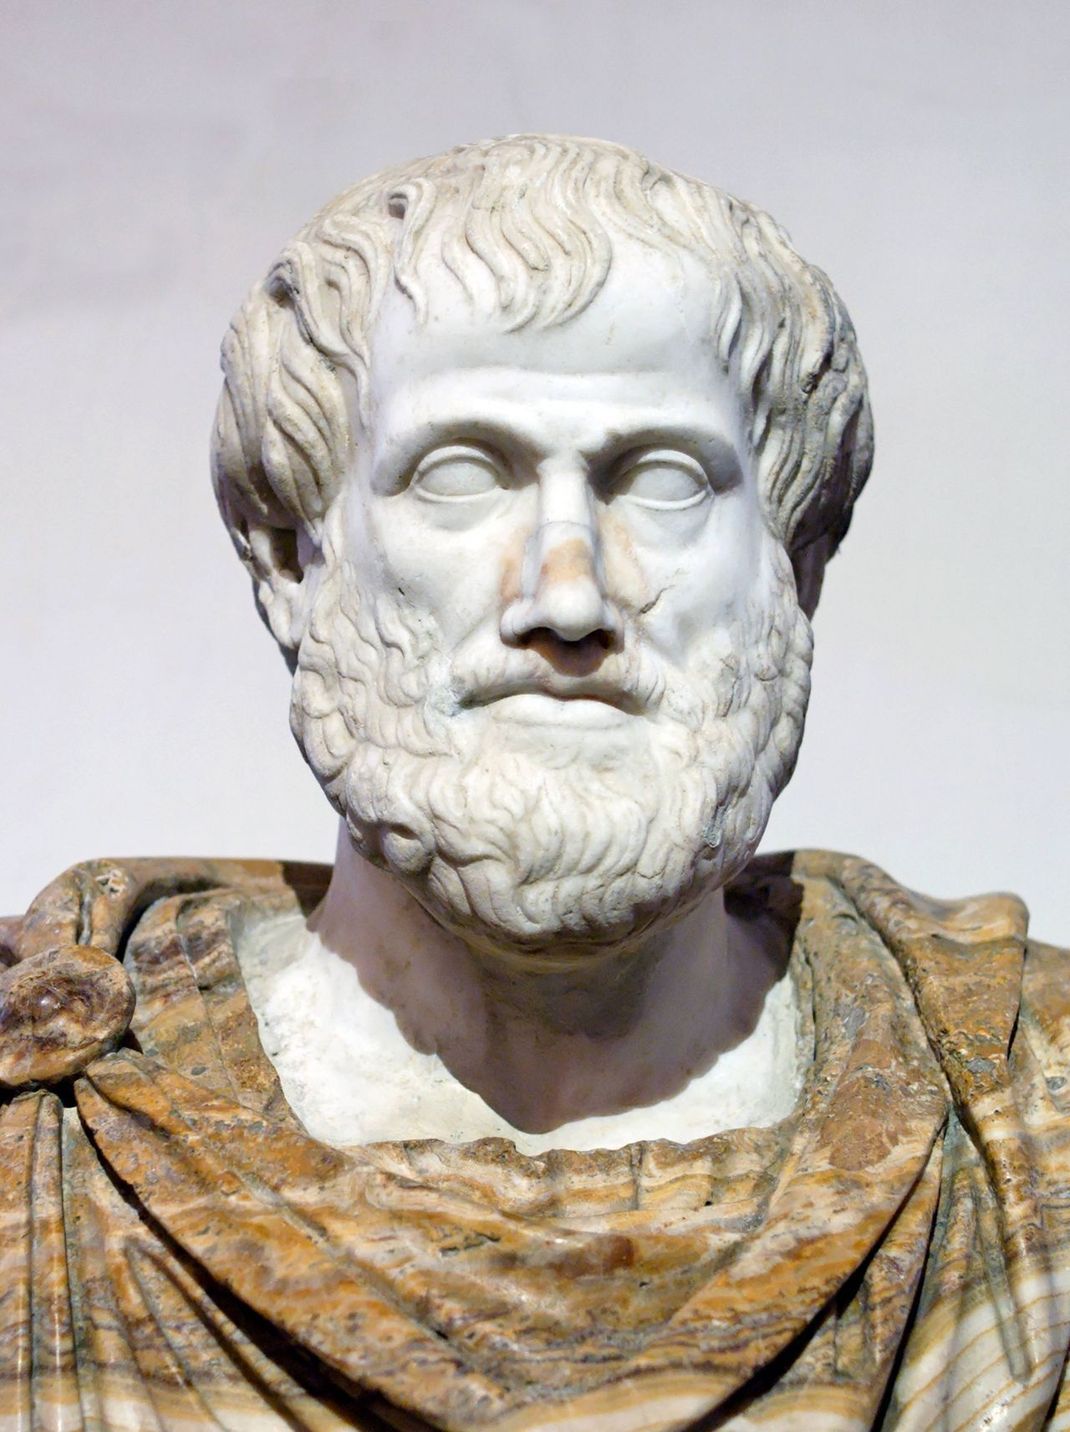 Natürlich haben auch schon die Menschen in der fernen Vergangenheit Sternschnuppen wahrgenommen. Schon der griechische Philosoph Aristoteles höchstpersönlich beschrieb die Leuchterscheinungen am Himmel in seinem Buch "Meteorologie" - vor mehr als 2.300 Jahren.